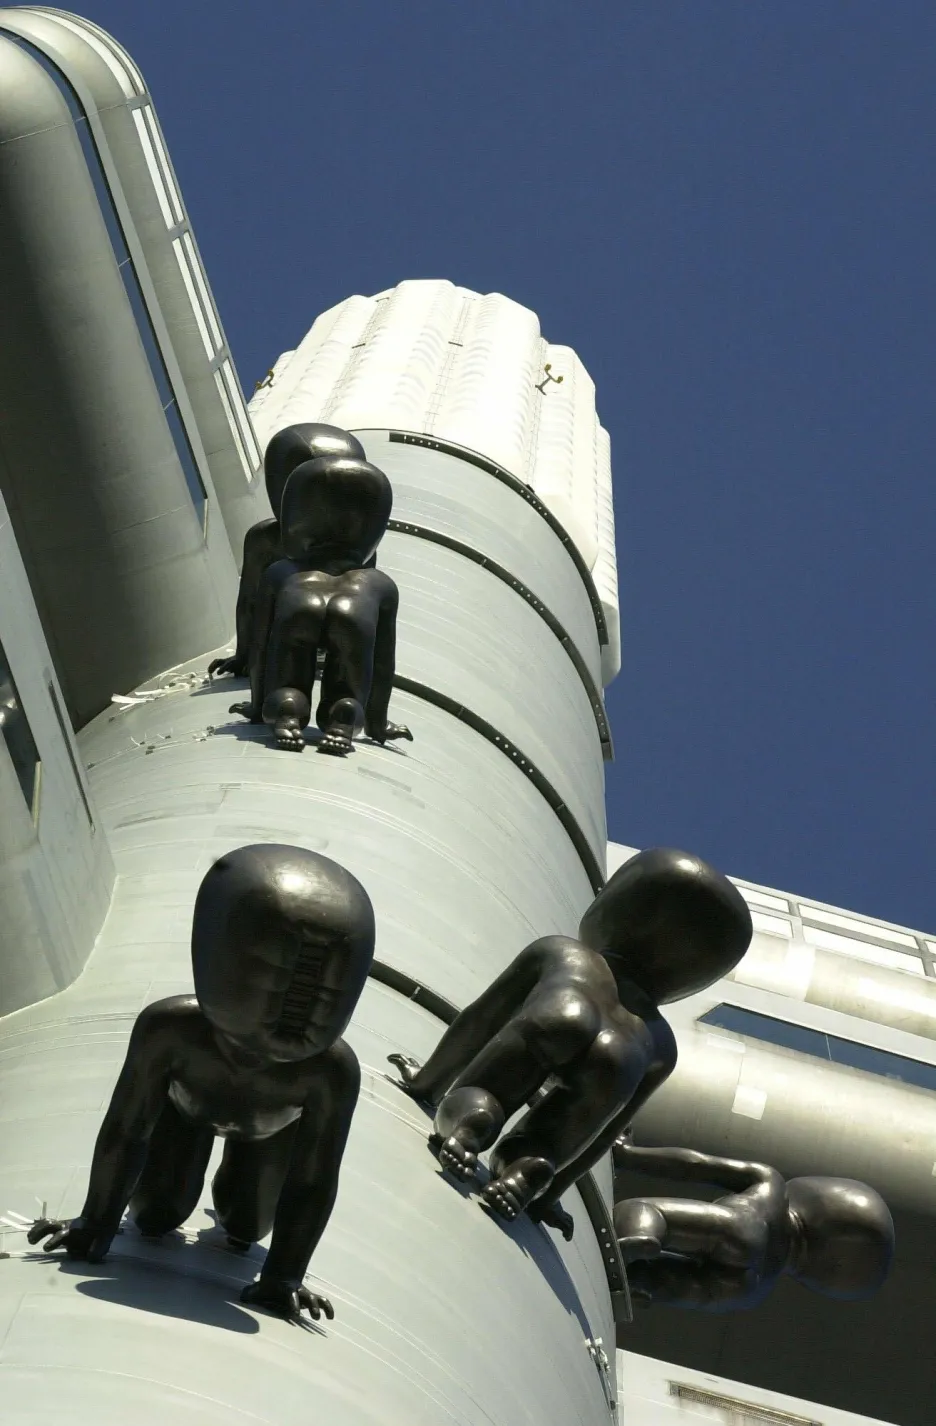 Soubor soch Miminka "Babies" byl nainstalován na Žižkovskou věž poprvé v květnu 2000